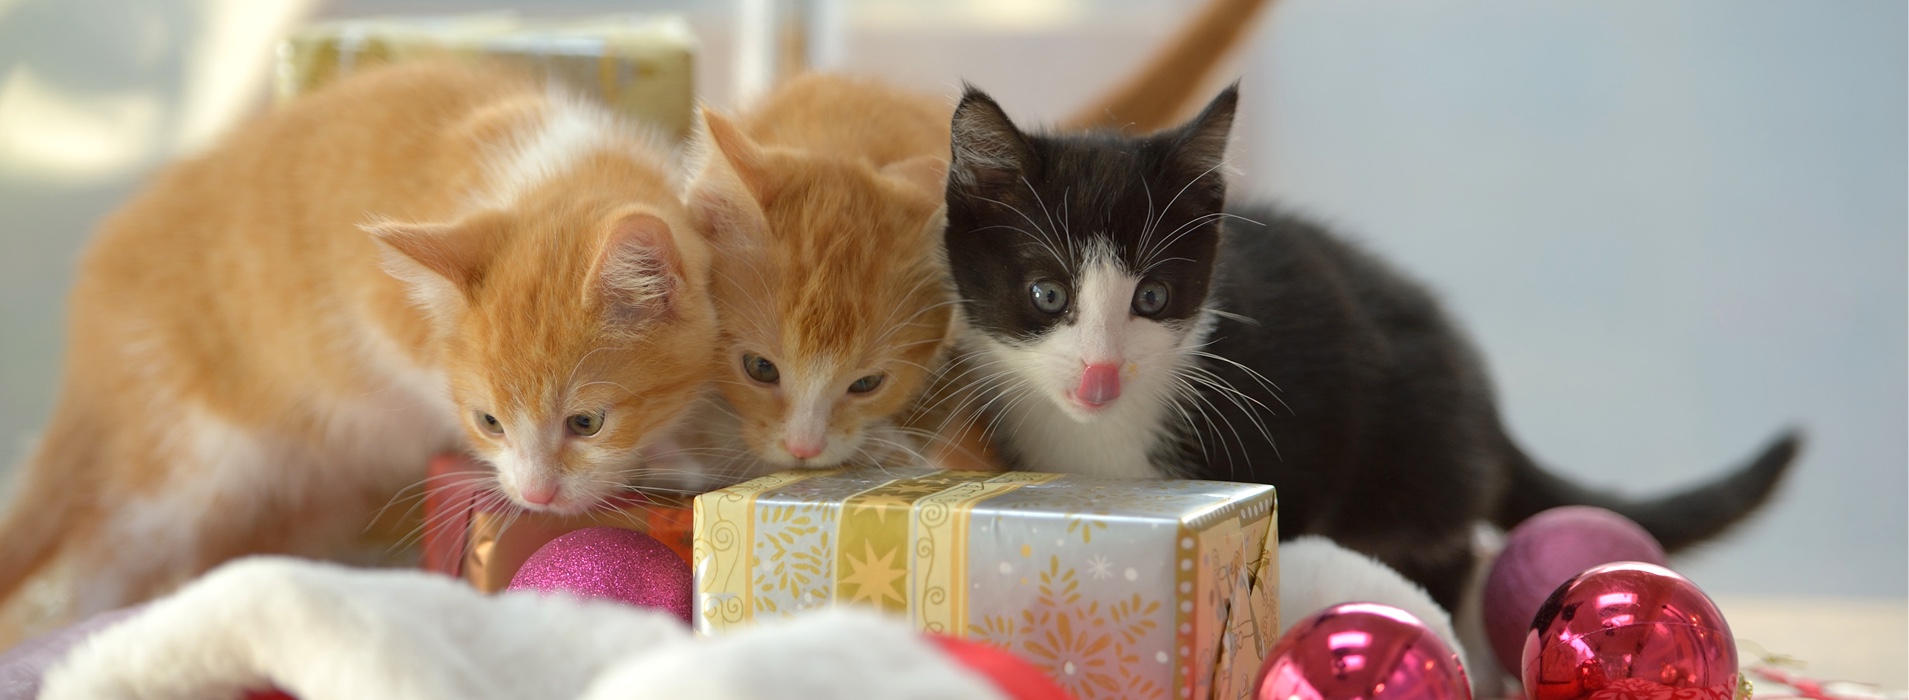 Orphaned Kittens 